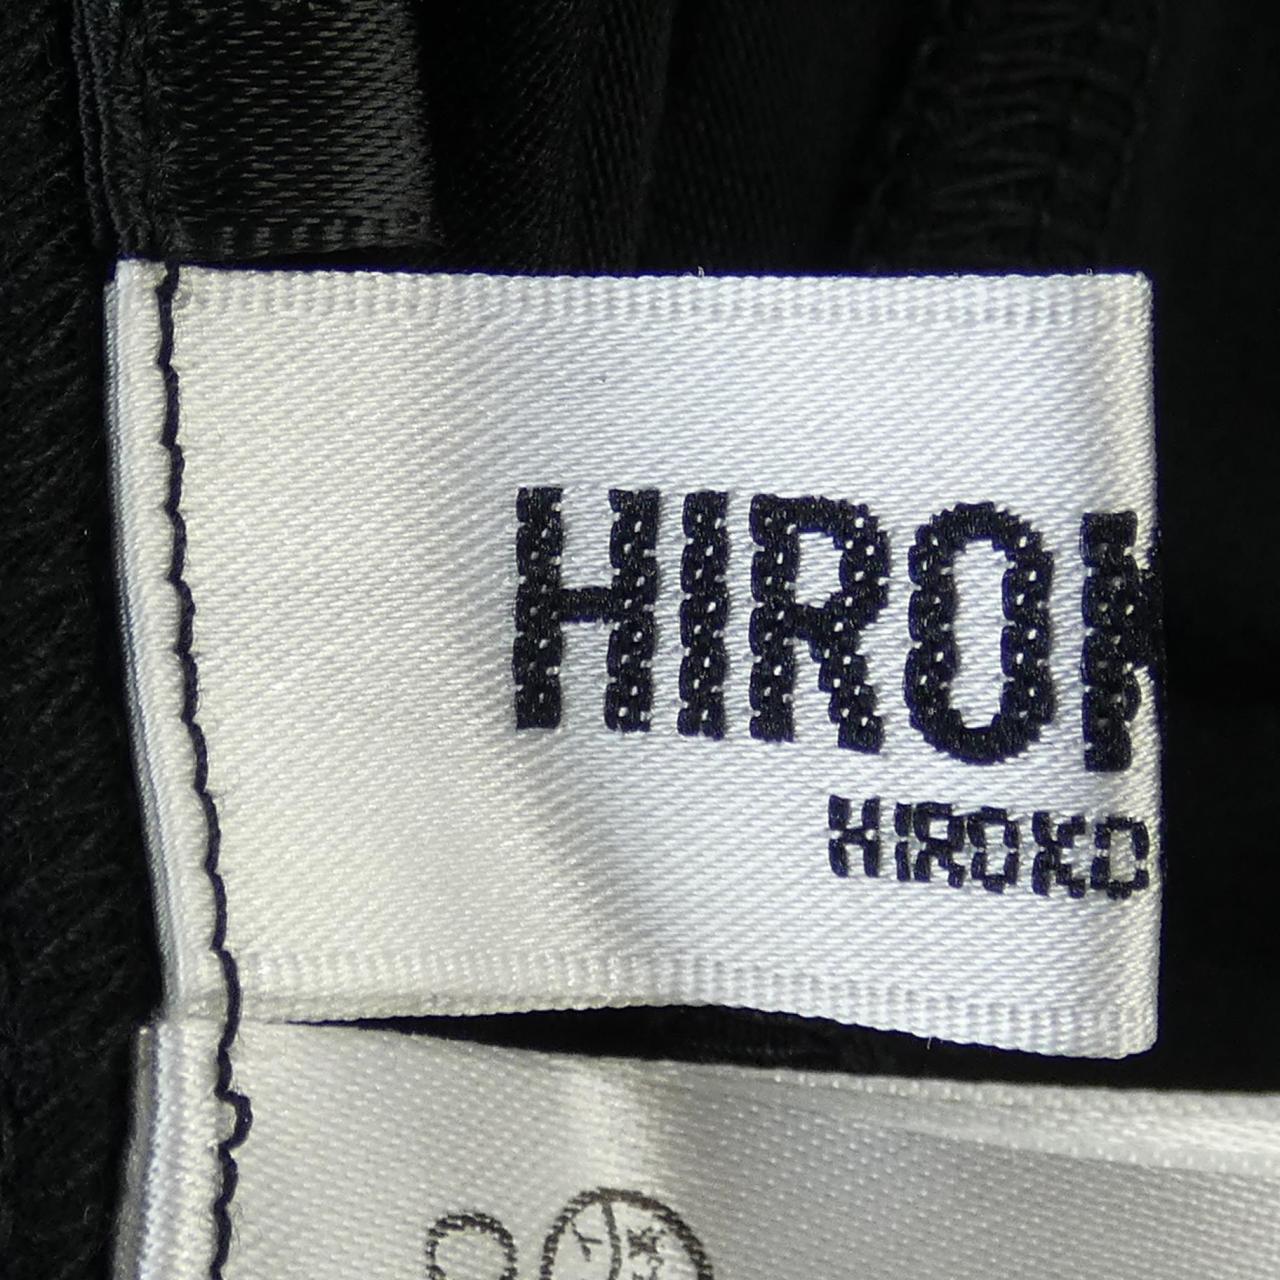 ヒロコ ビス HIROKO BIS ワンピース